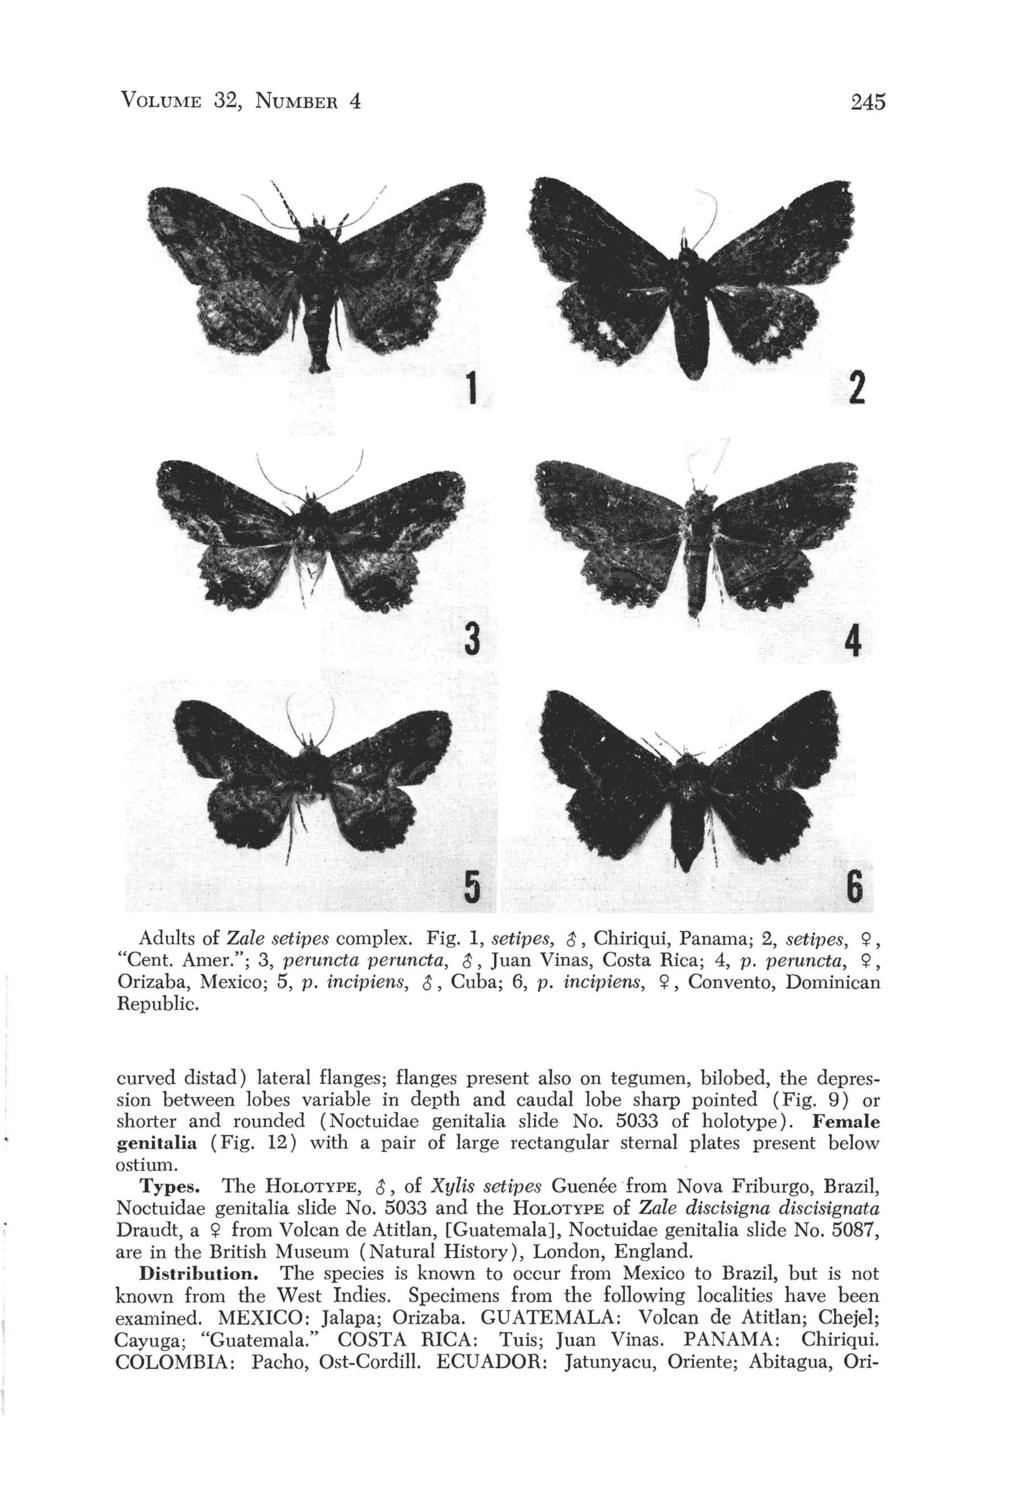 VOLUME 32, NUMBER 4 245 3 4 5 6 Adults of Zale setipes complex. Fig. 1, setipes, ~, Chiriqui, Panama; 2, setipes, C;>, "Cent. Amer."; 3, peruncta peruncta, ~,Juan Vinas, Costa Rica; 4, p.